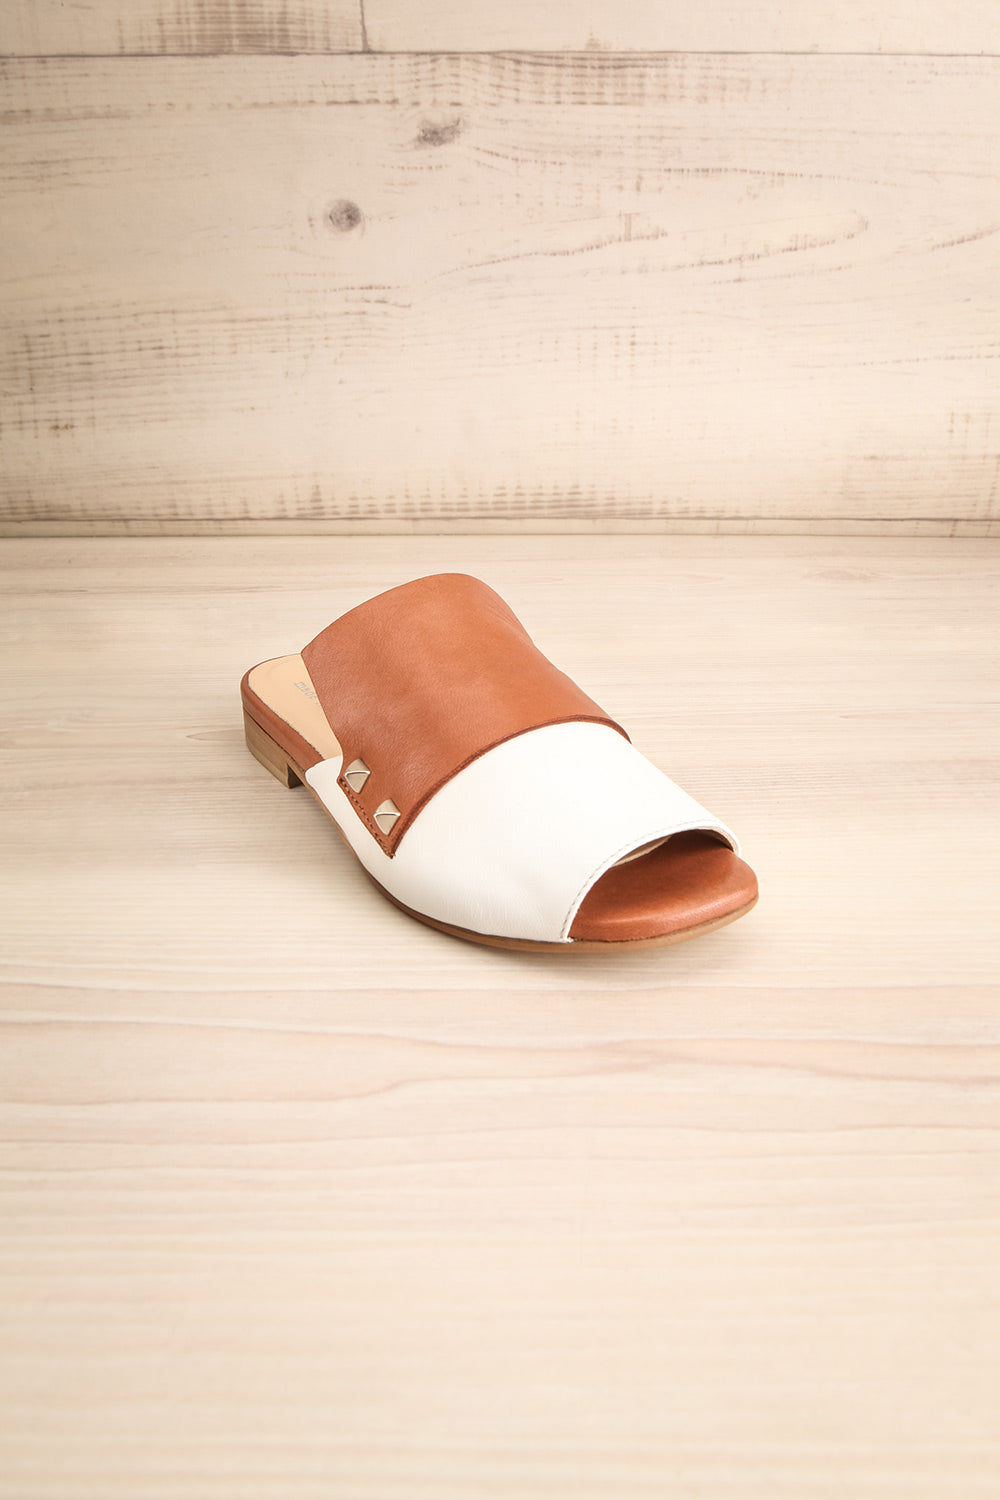 Cardinet White & Tan Slip-On Sandals | La Petite Garçonne Chpt. 2 4